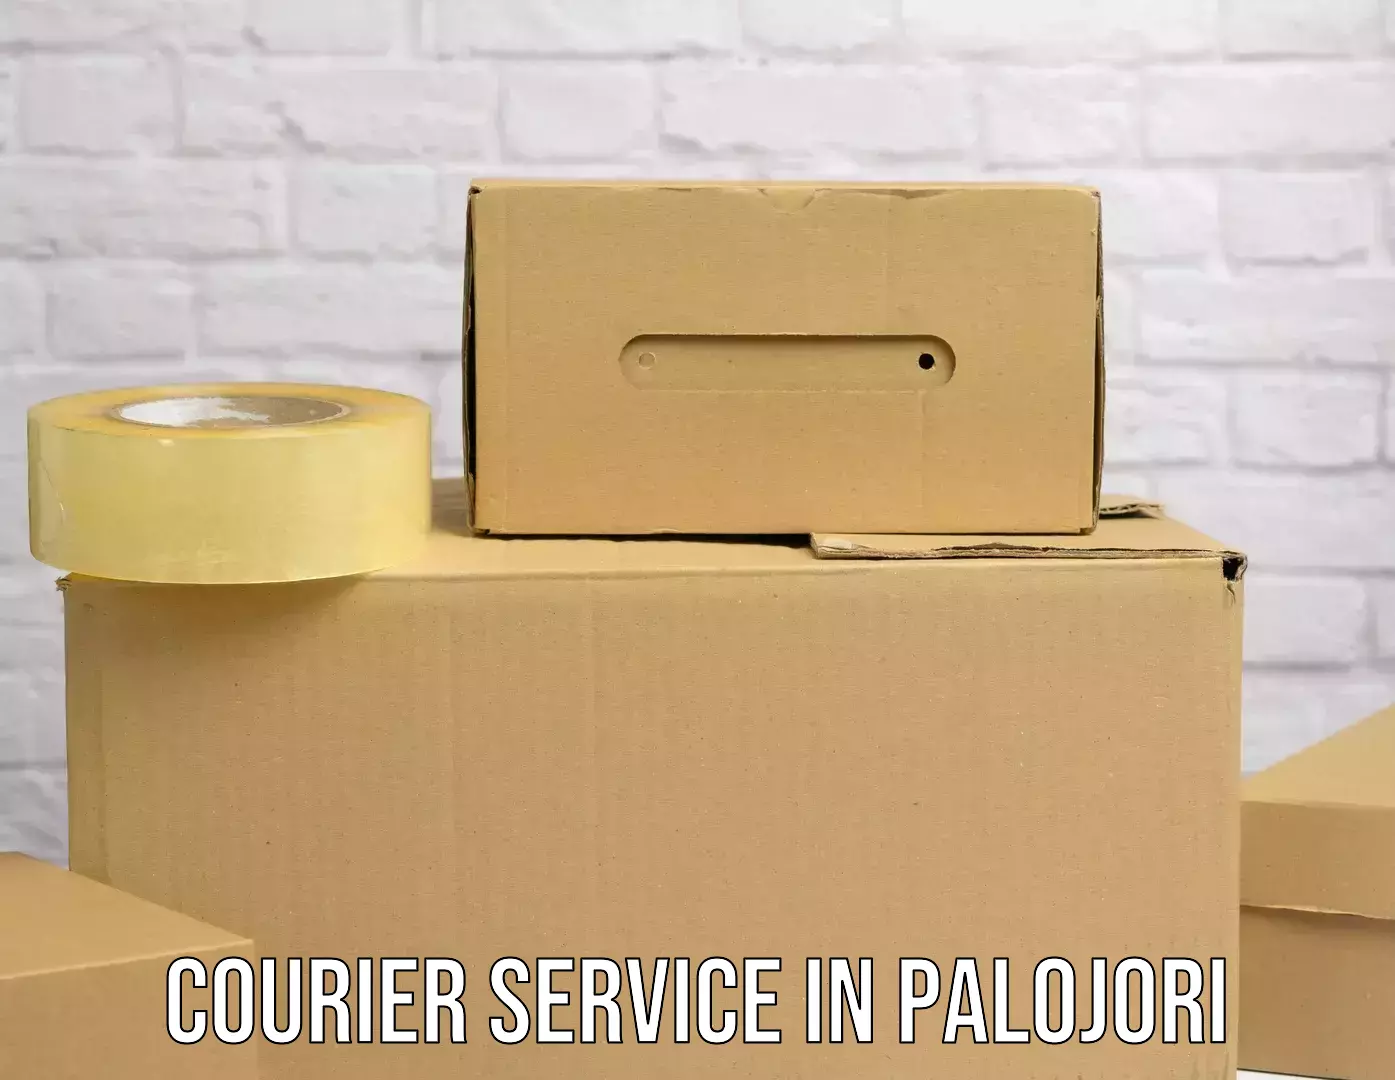 Reliable delivery network in Palojori